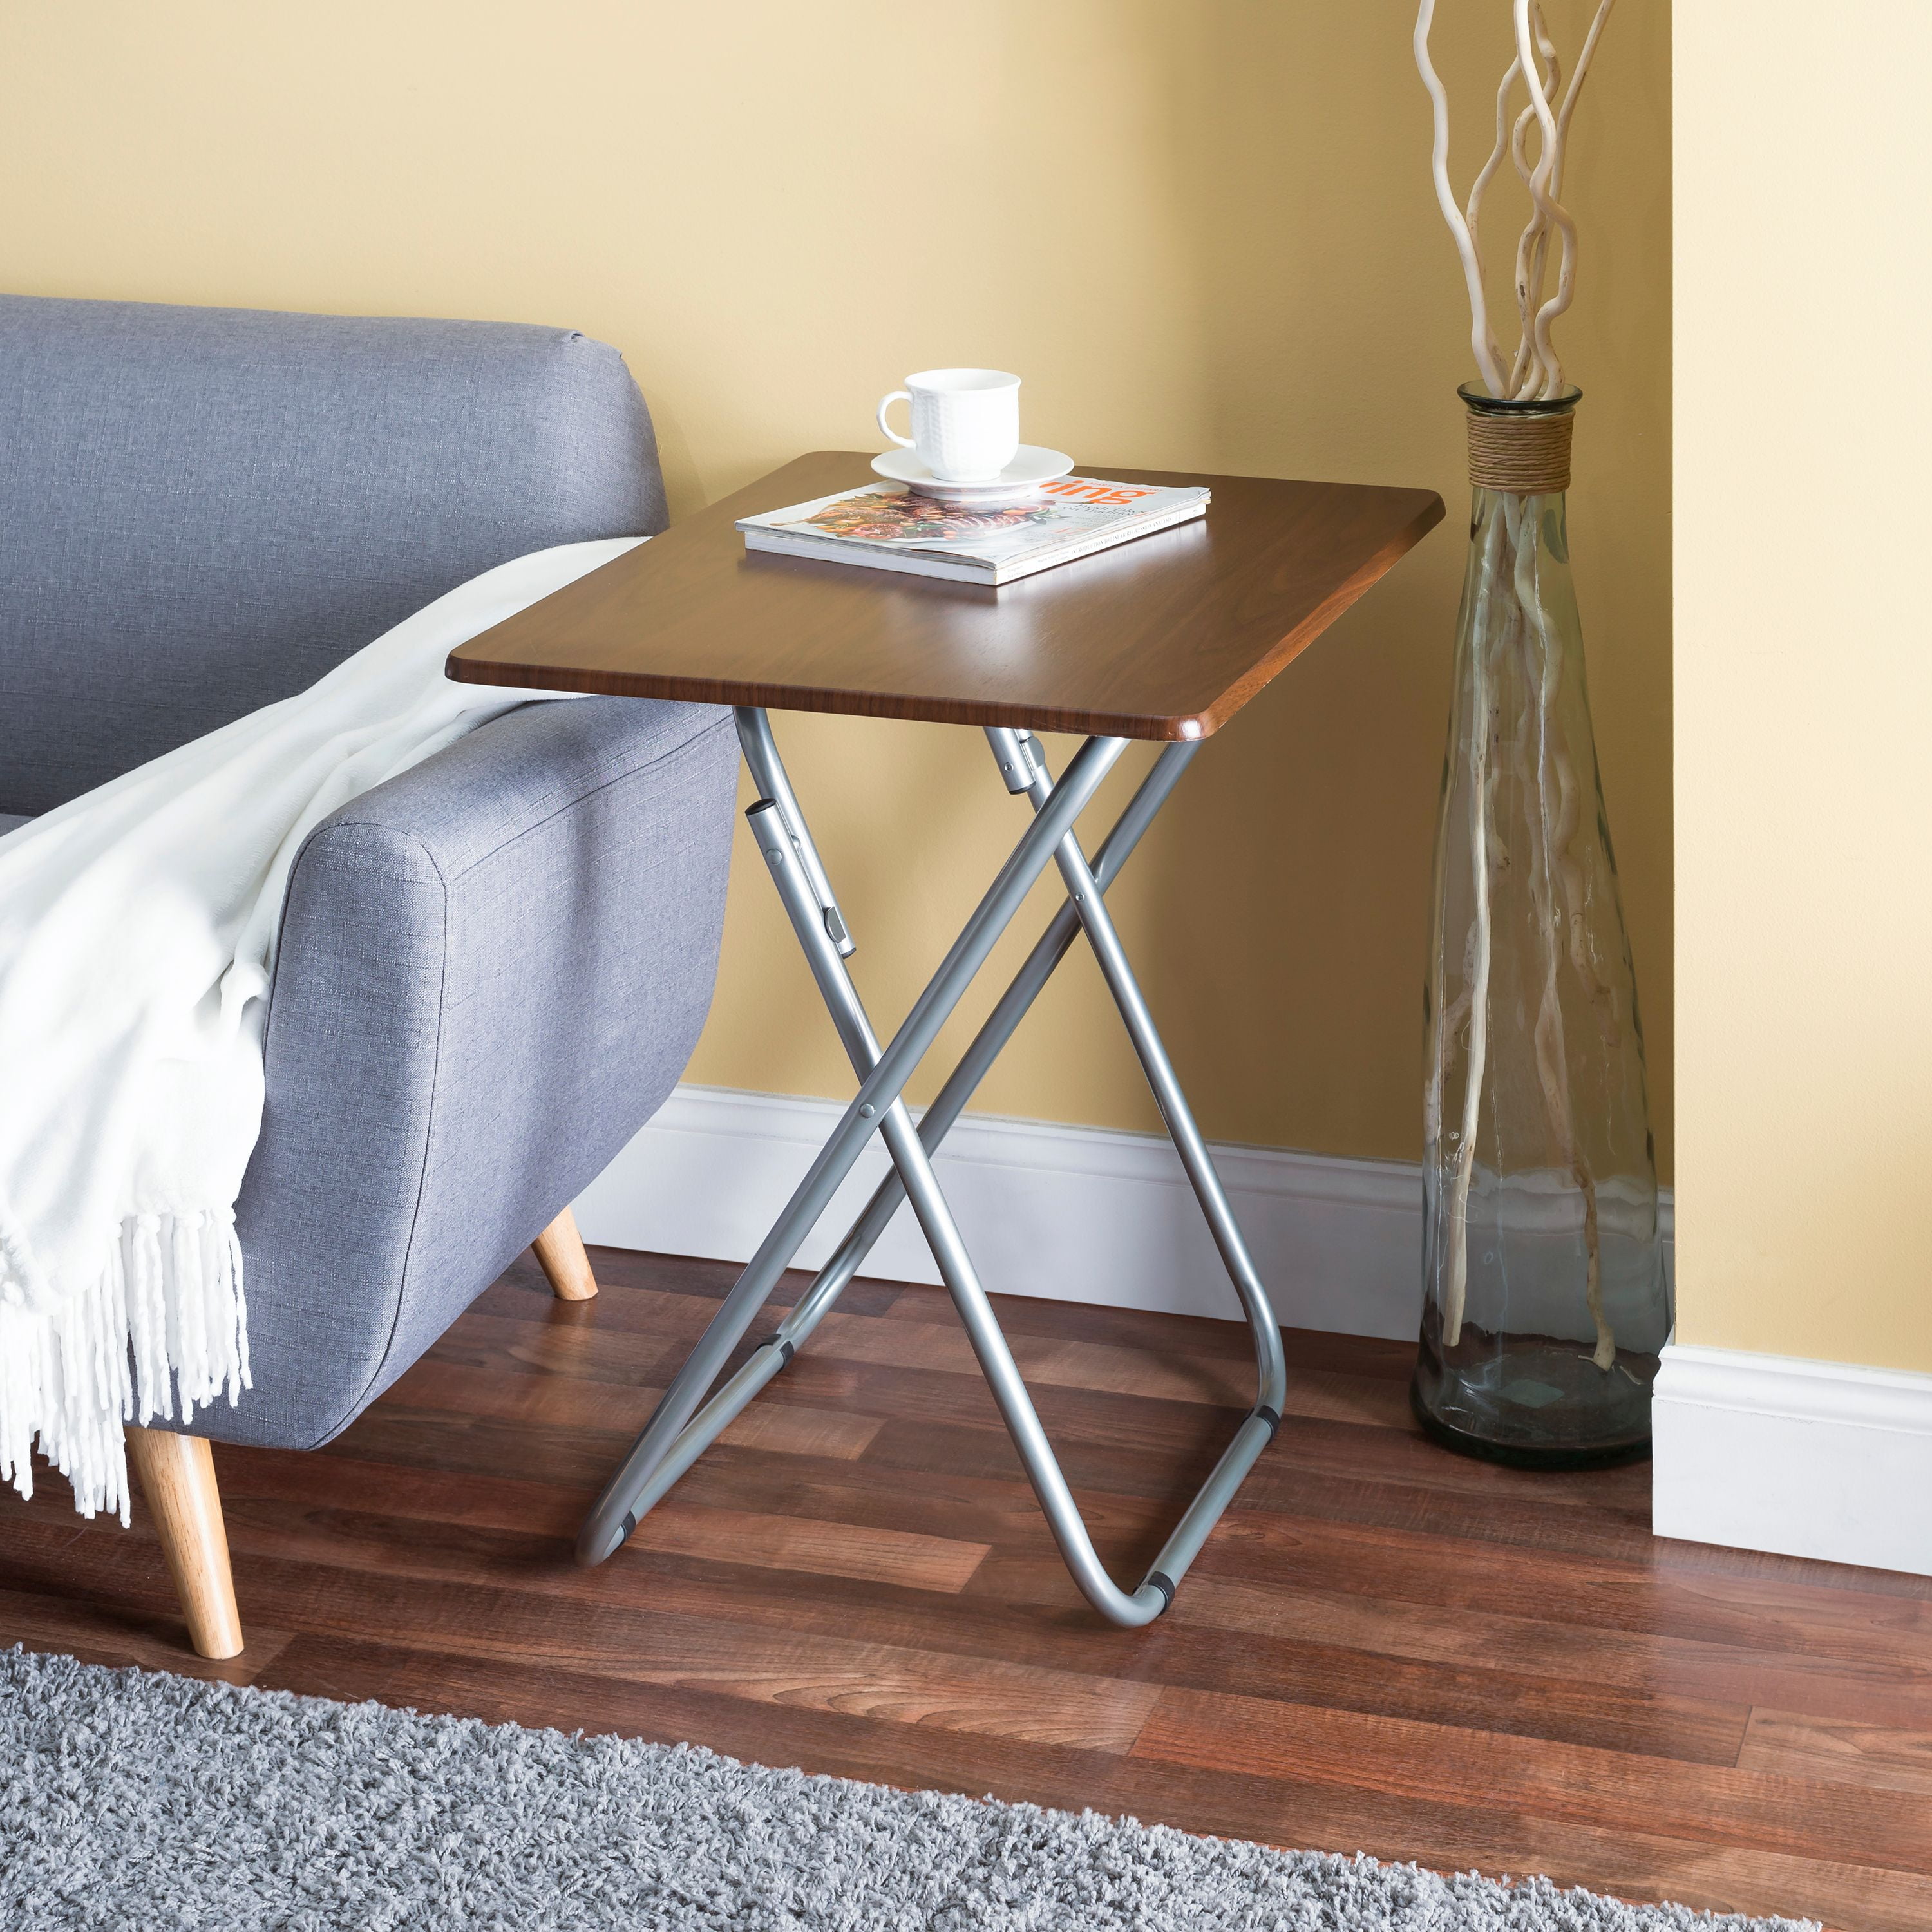 Home Basics Jumbo Multi-Purpose Foldable Table, Natural